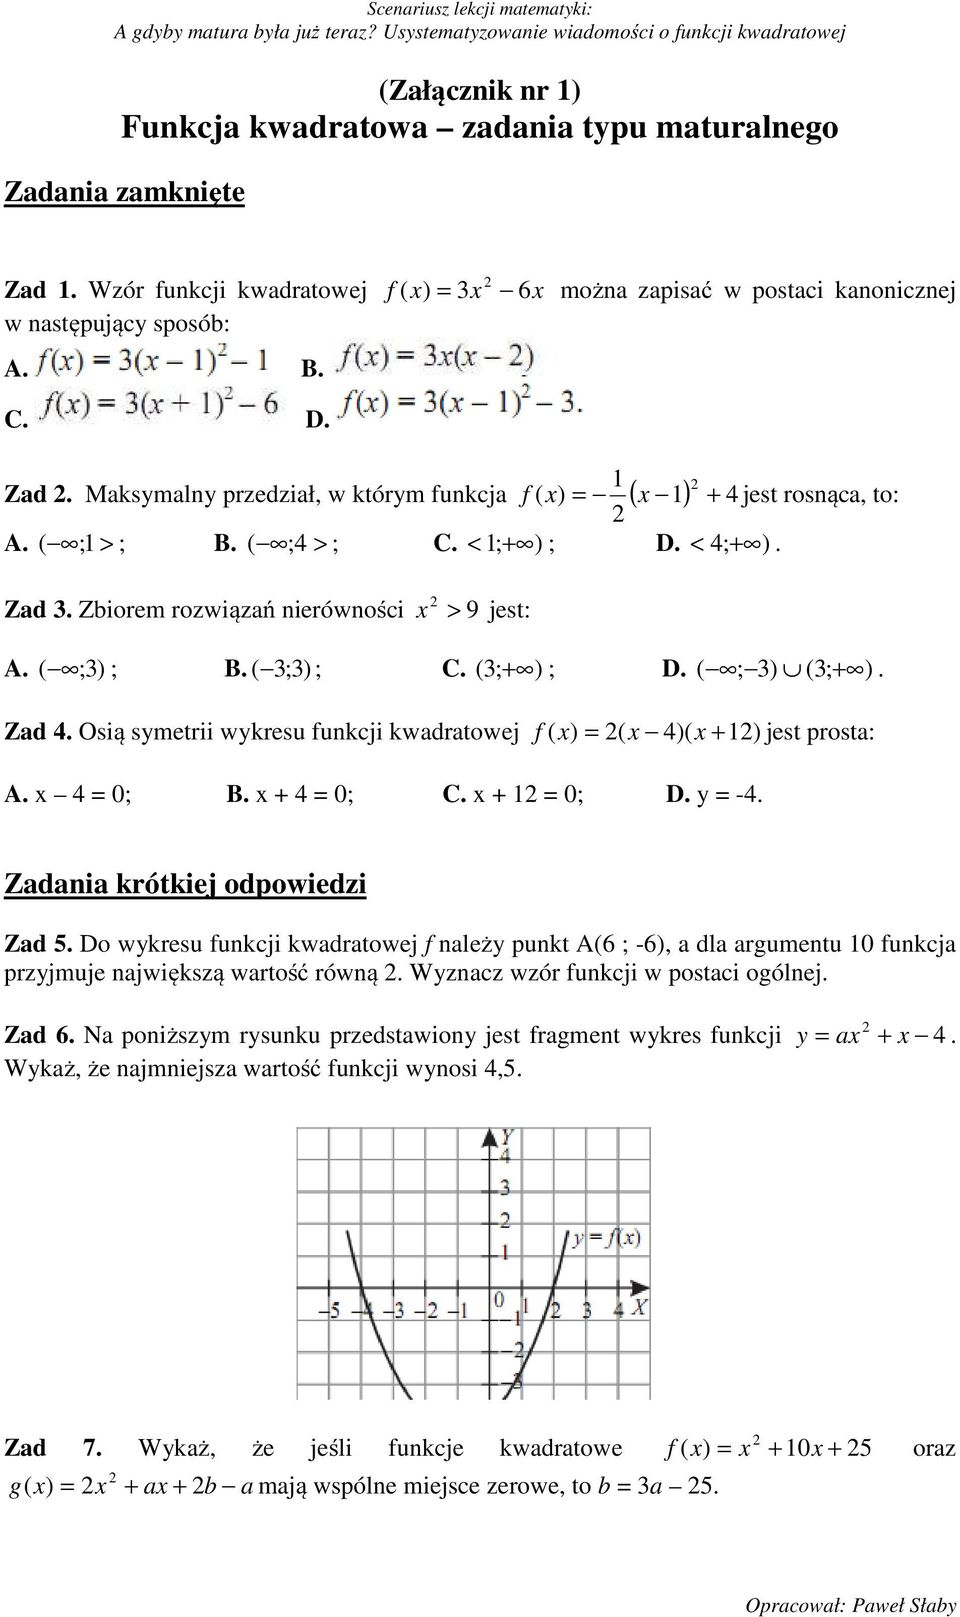 ( ;3) ; B. ( 3;3) ; C. ( 3; + ) ; D. ( ; 3) (3; + ). Zad 4. Osią symetrii wykresu funkcji kwadratowej f ( x) = 2( x 4)( x + 12) jest prosta: A. x 4 = 0; B. x + 4 = 0; C. x + 12 = 0; D. y = -4.